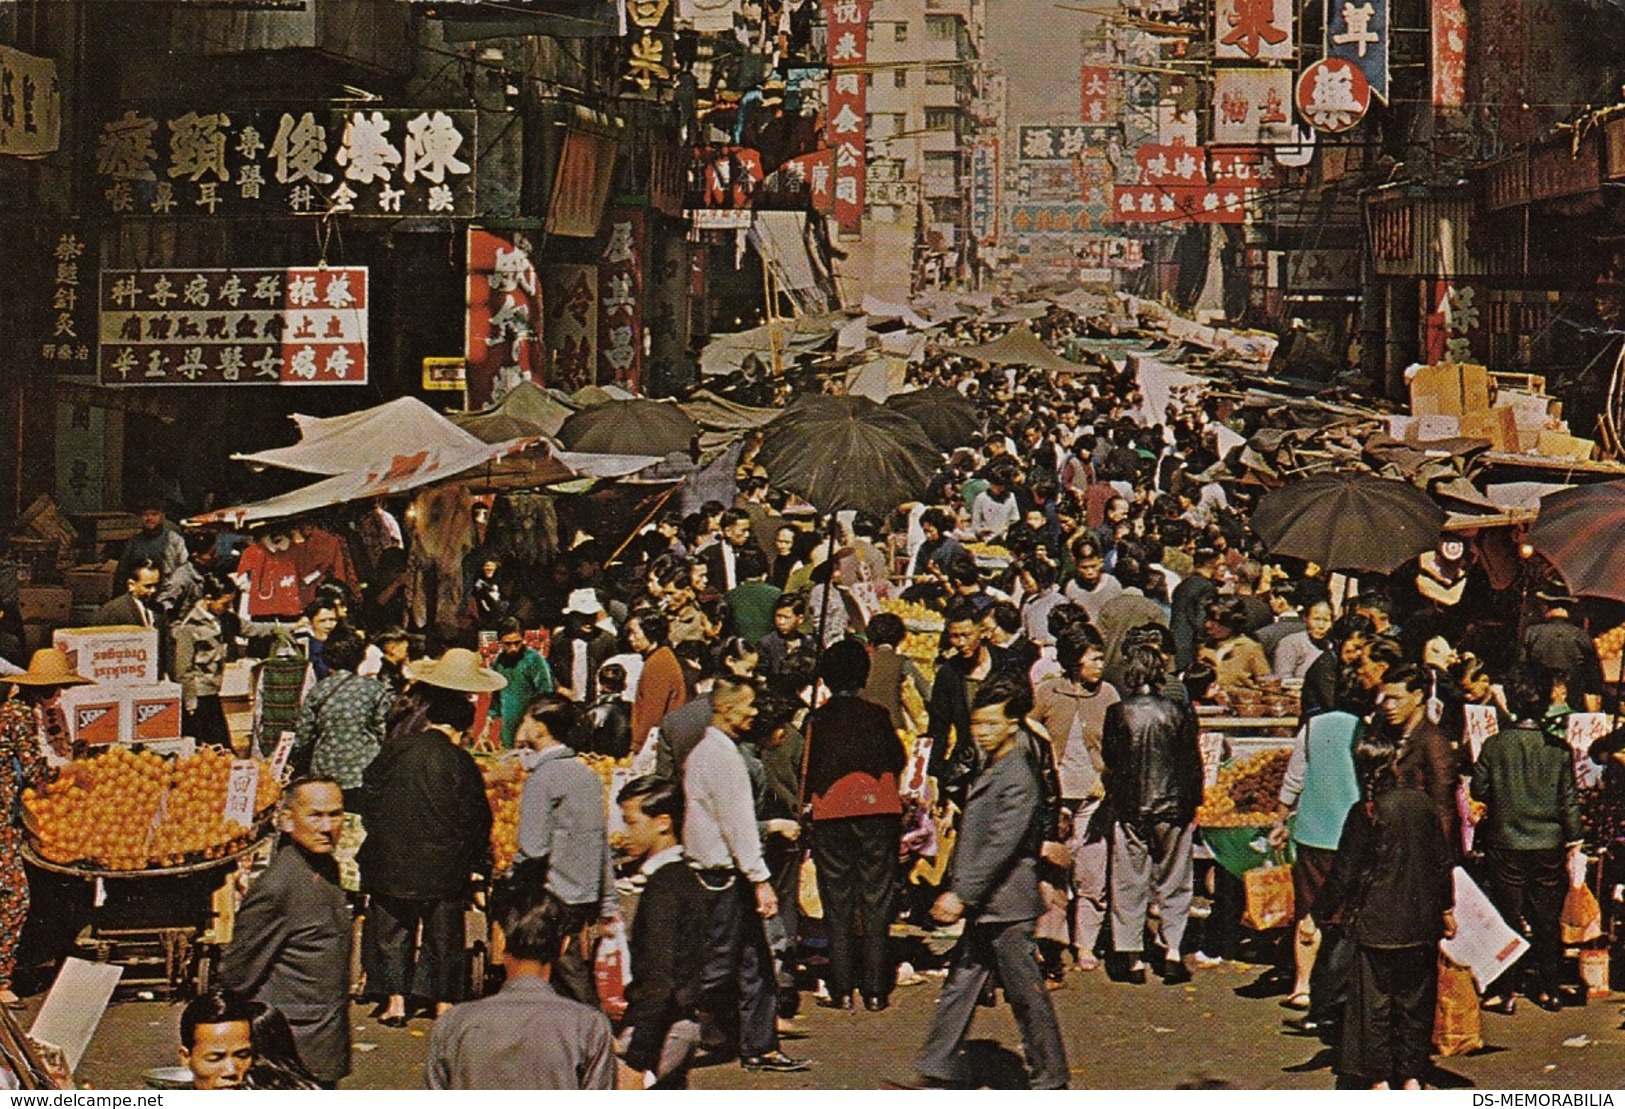 HONG KONG KOWLOON STREET MARKET OLD POSTCARD USED W STAMPS 1977 - Cina (Hong Kong)